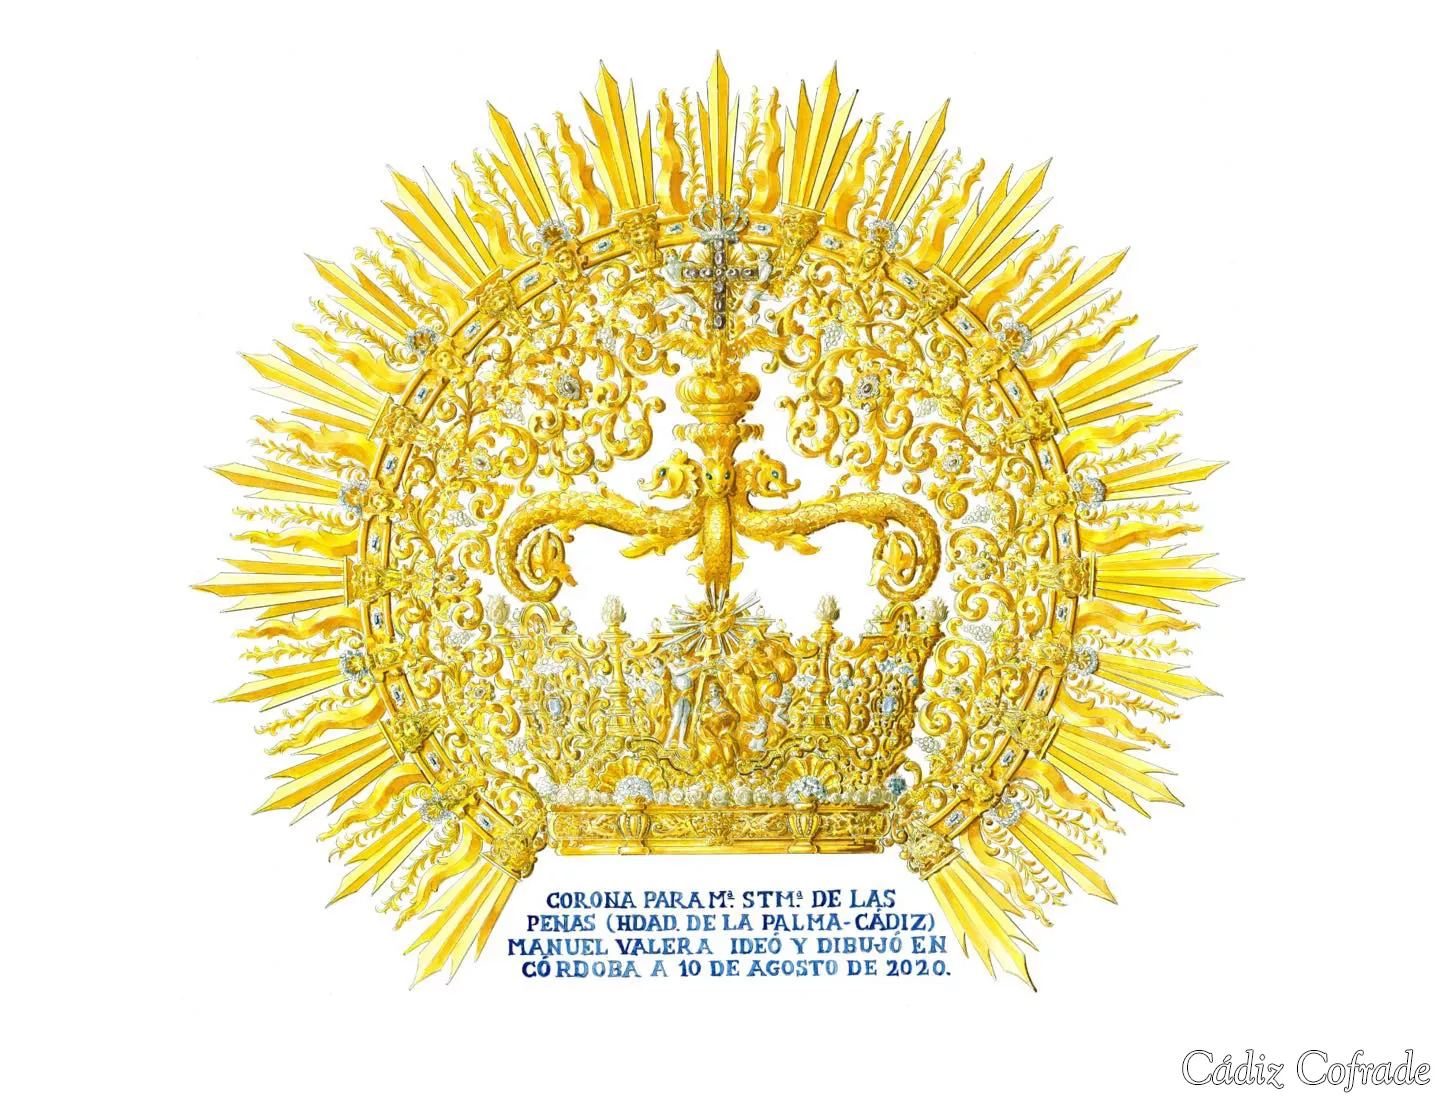 Los devotos y hermanos de La Palma han donado el oro para la corona